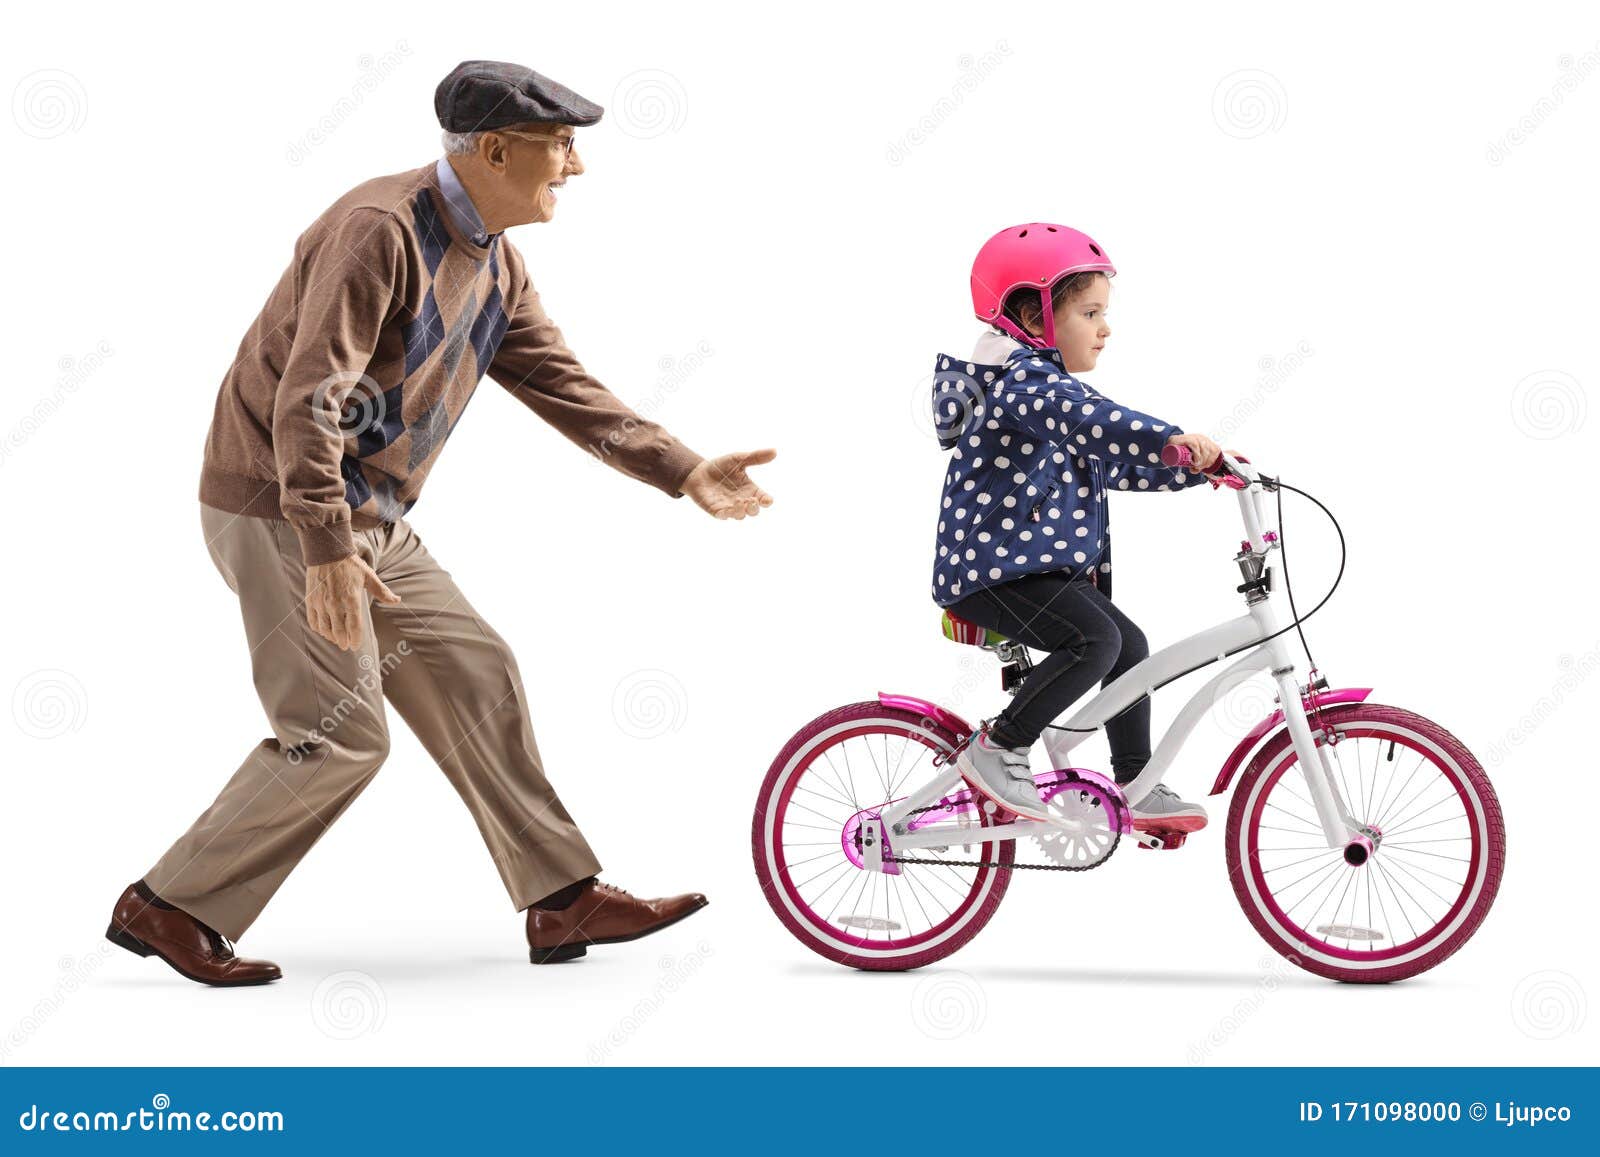 Внучка ехала. Дедушка учит кататься на велосипеде. Дедушка с внучкой катался на велосипед. Мужчина на велосипеде с детьми. Дедушка с внучкой катались на велосипедах рисунок.